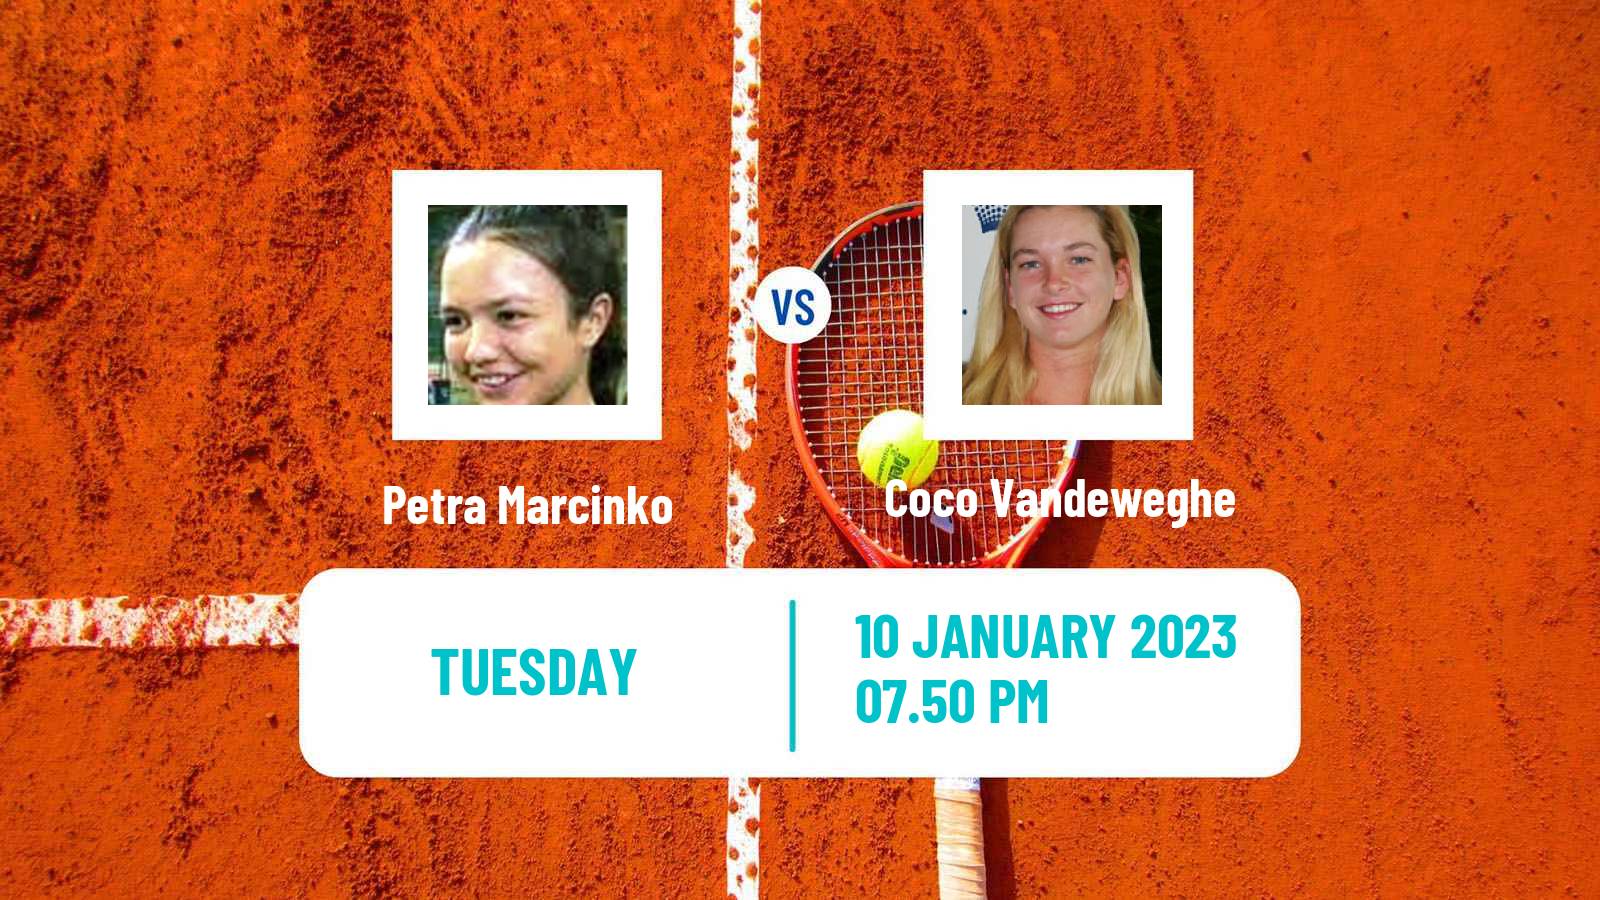 Tennis WTA Australian Open Petra Marcinko - Coco Vandeweghe